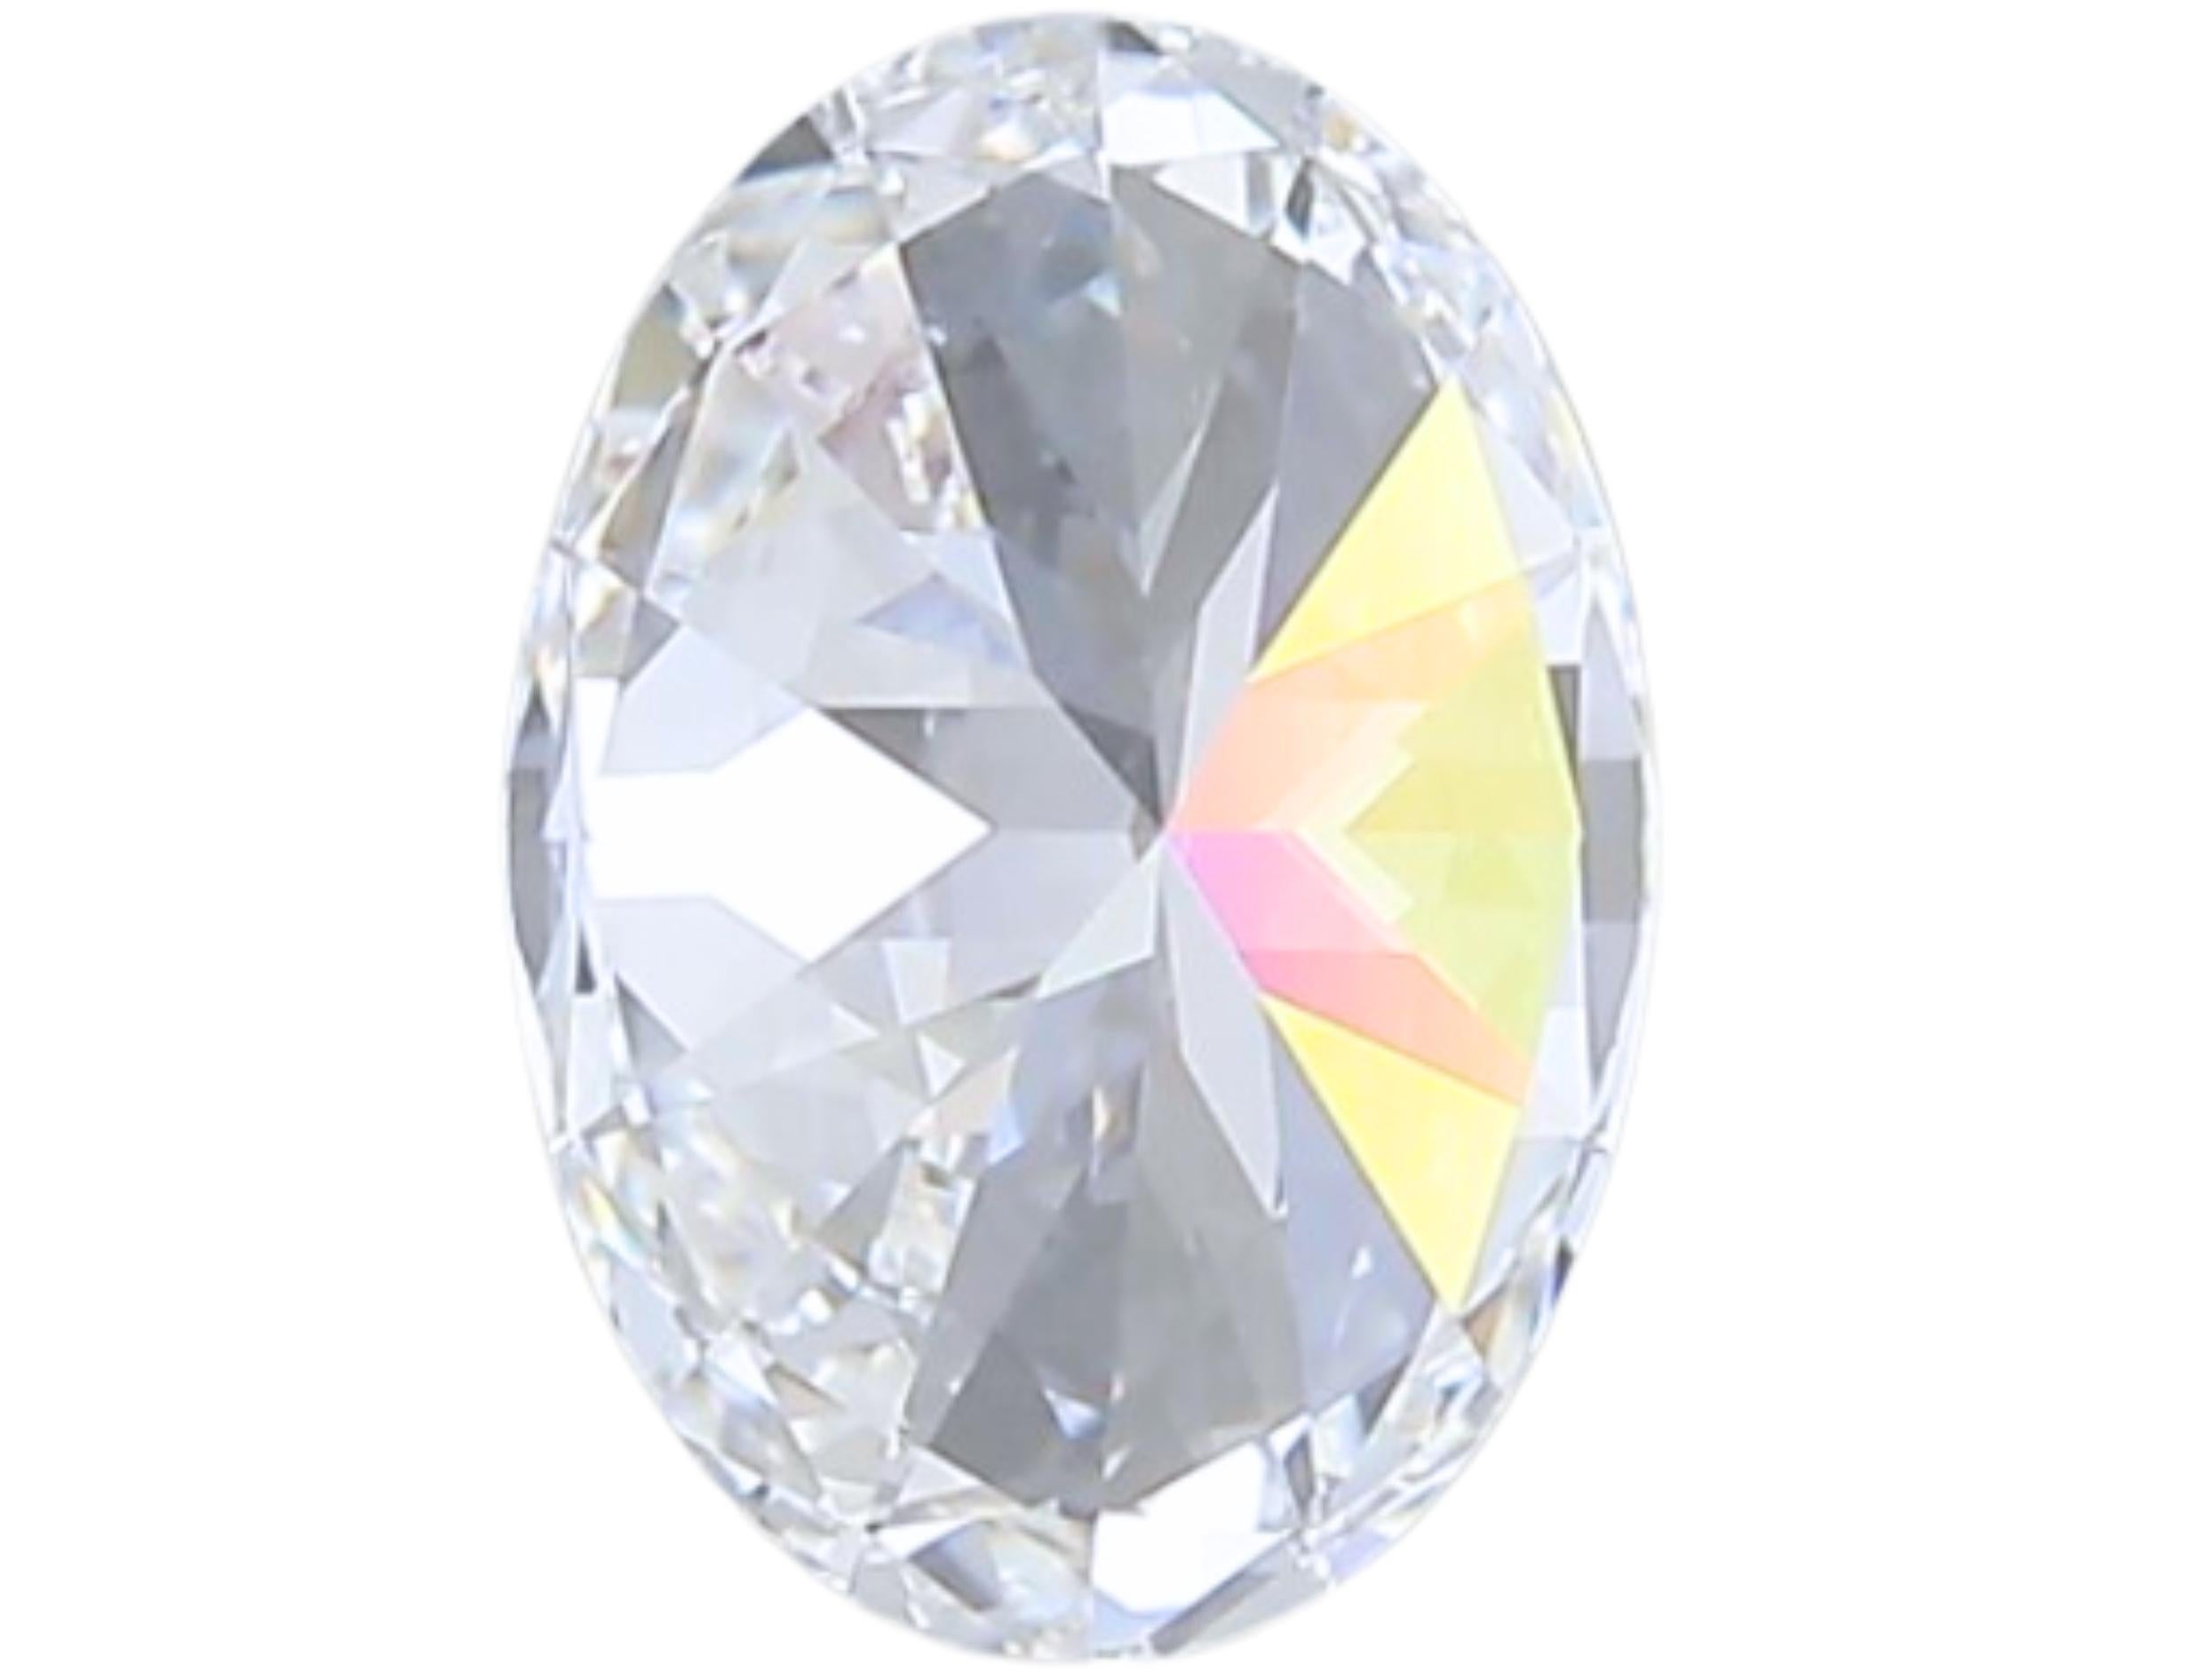 Luxurious 1.02 carat Oval Cut Brilliant Diamond For Sale 2